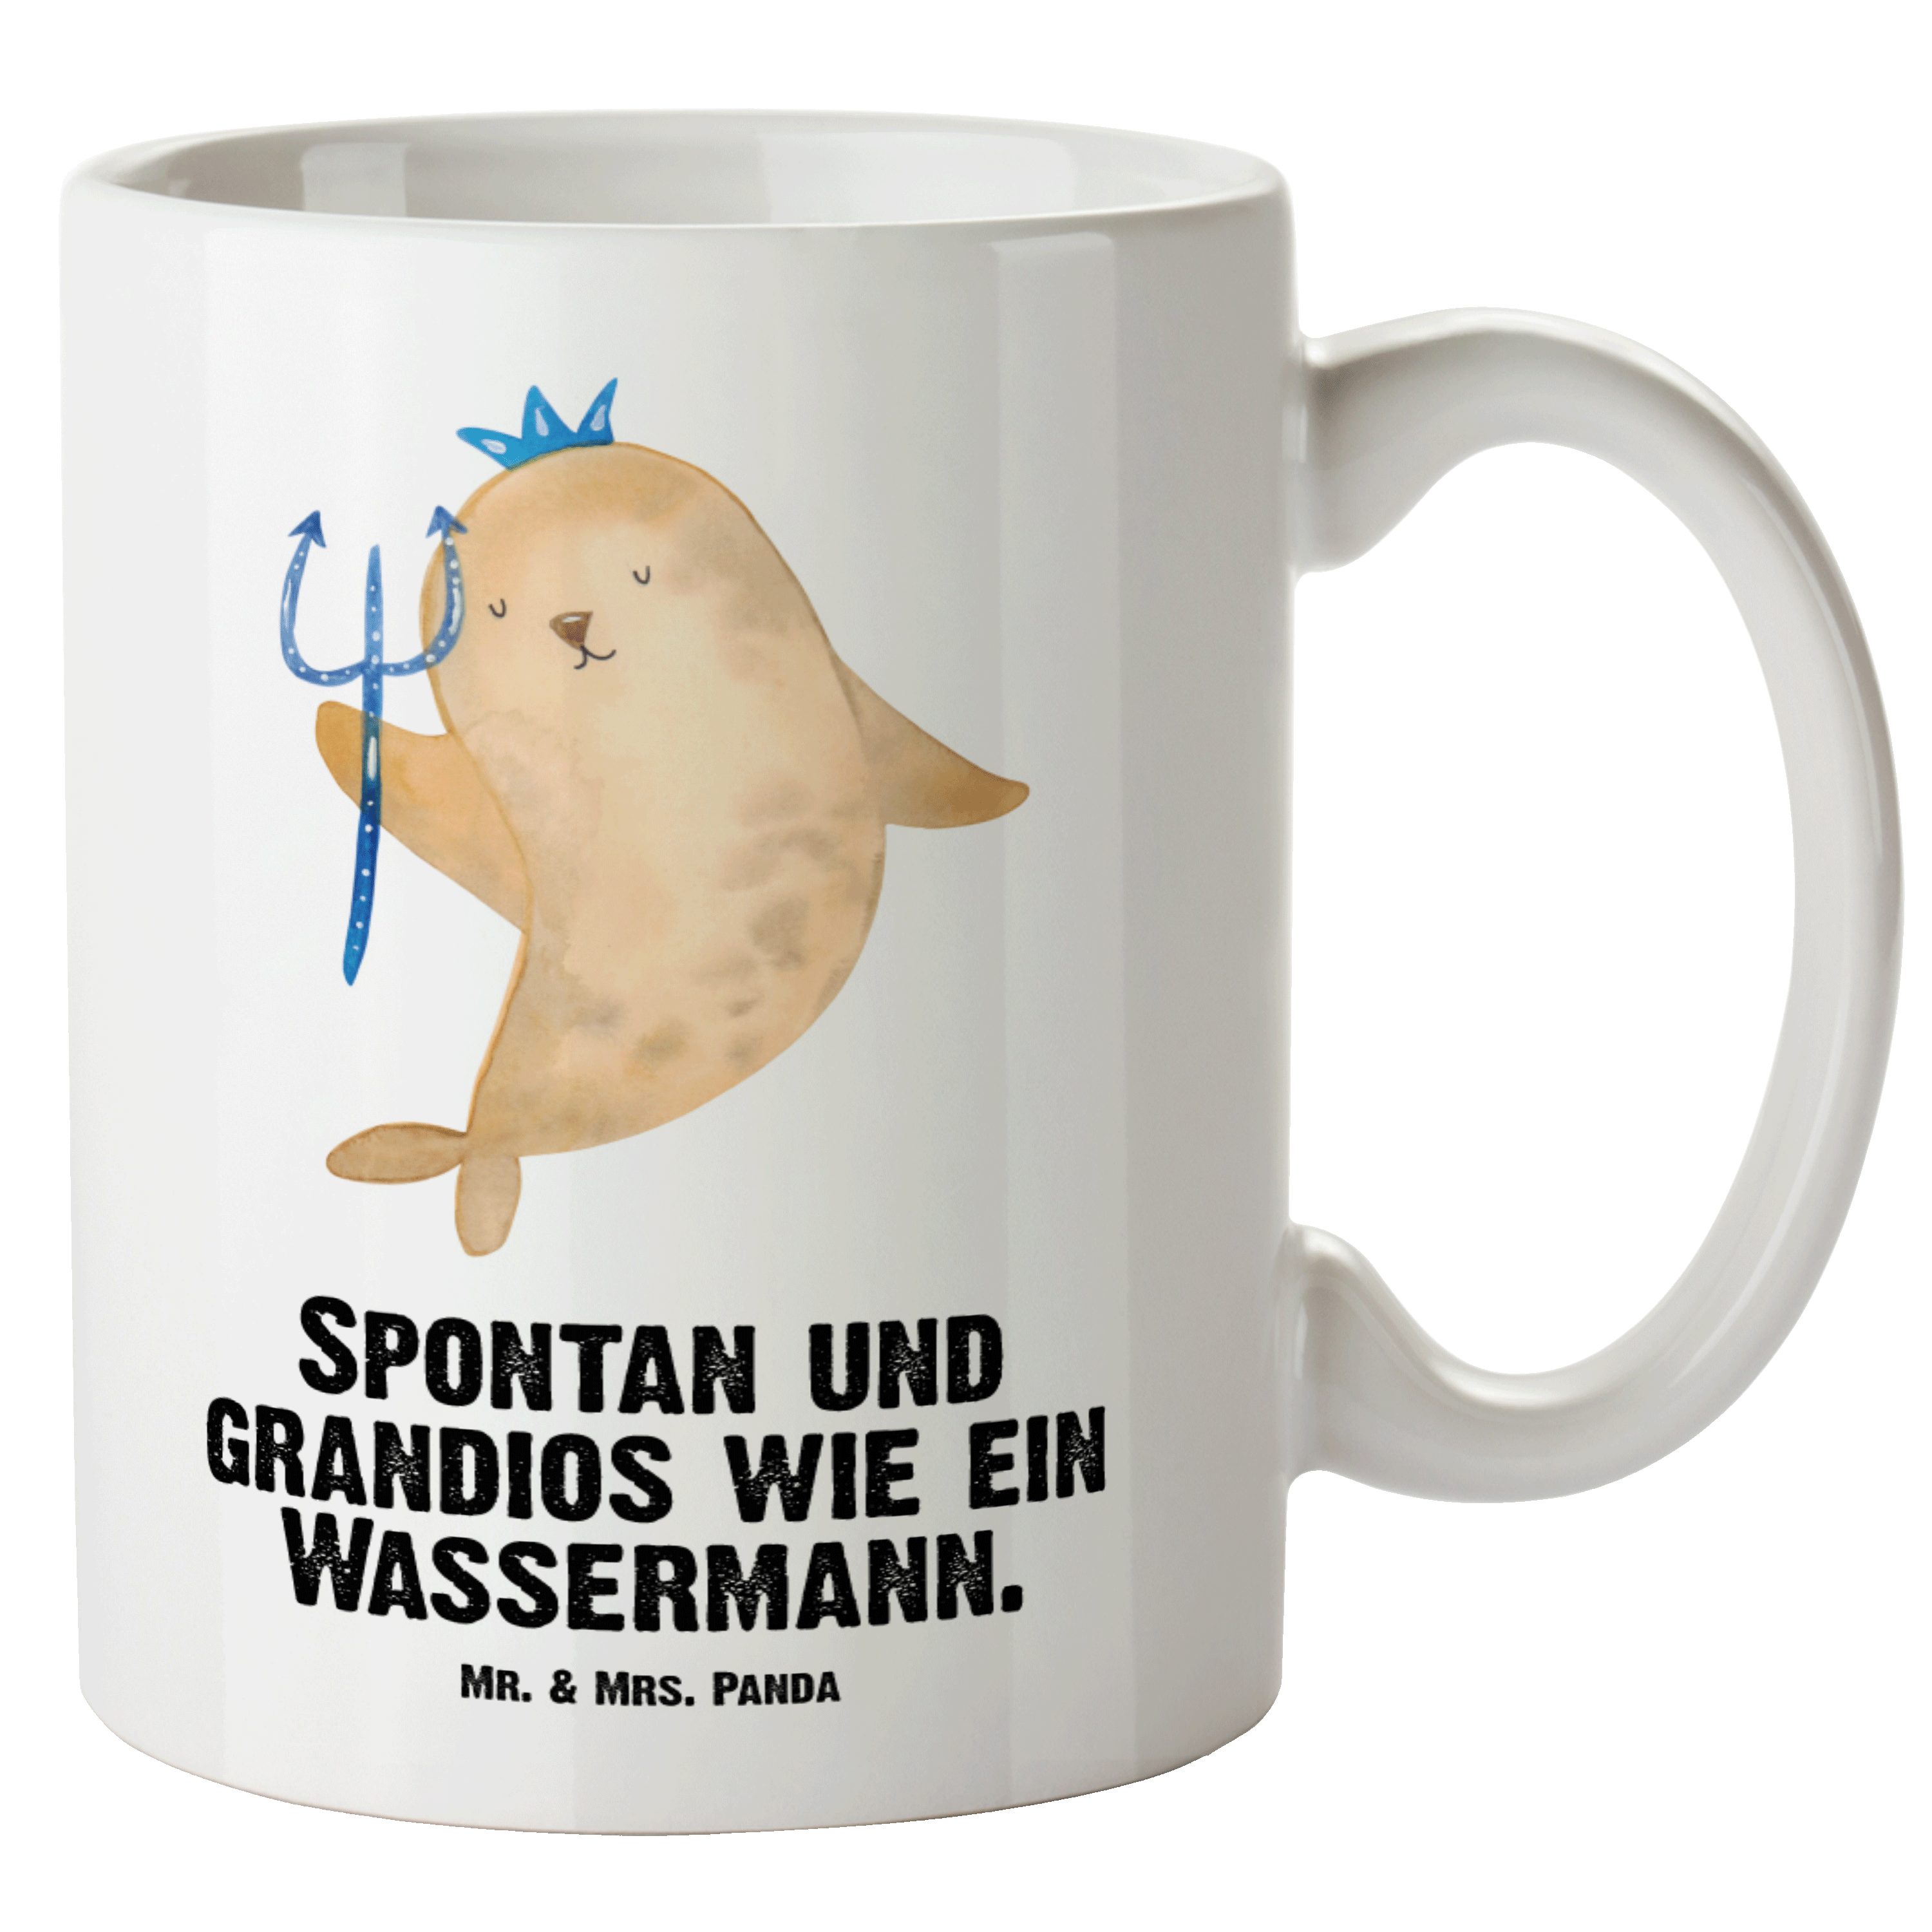 Mr. & Mrs. Panda Tasse Sternzeichen Wassermann - Weiß - Geschenk, Aszendent, Astrologie, Gro, XL Tasse Keramik